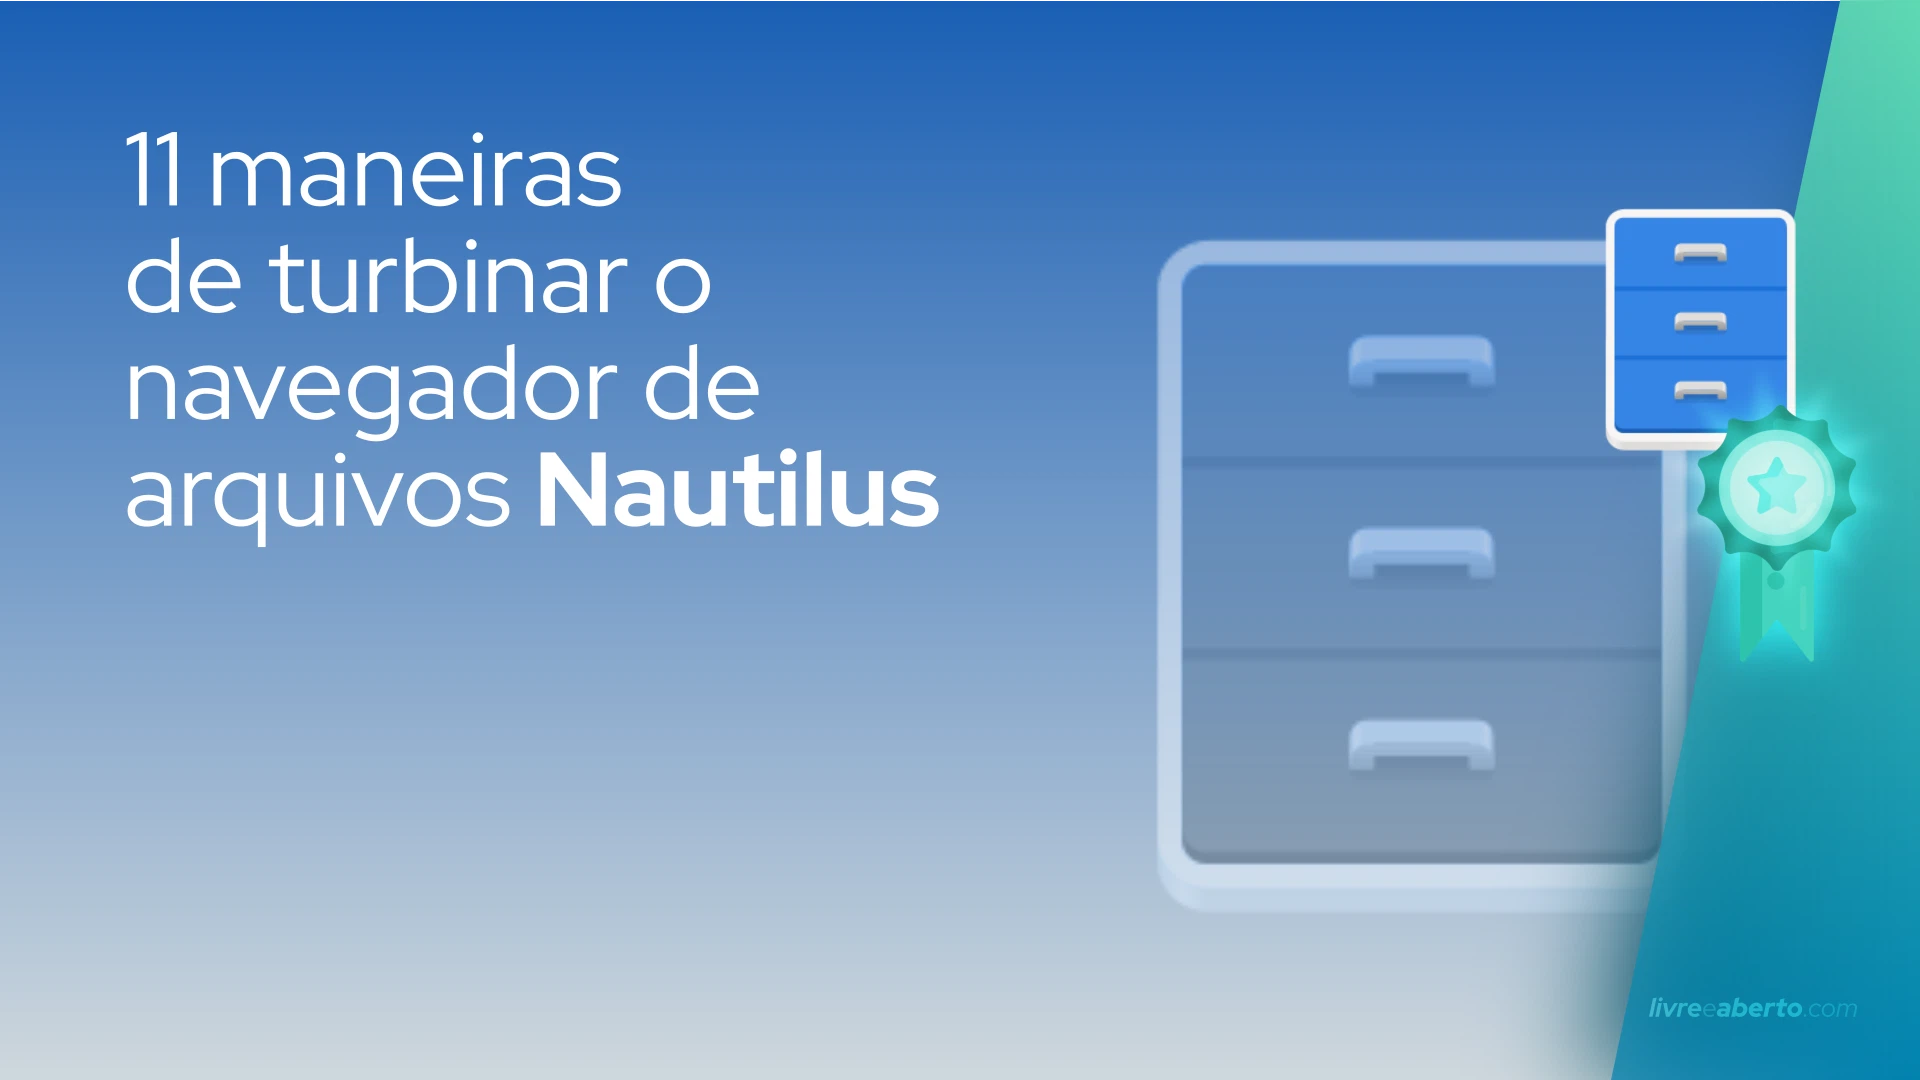 11 maneiras de turbinar o navegador de arquivos Nautilus